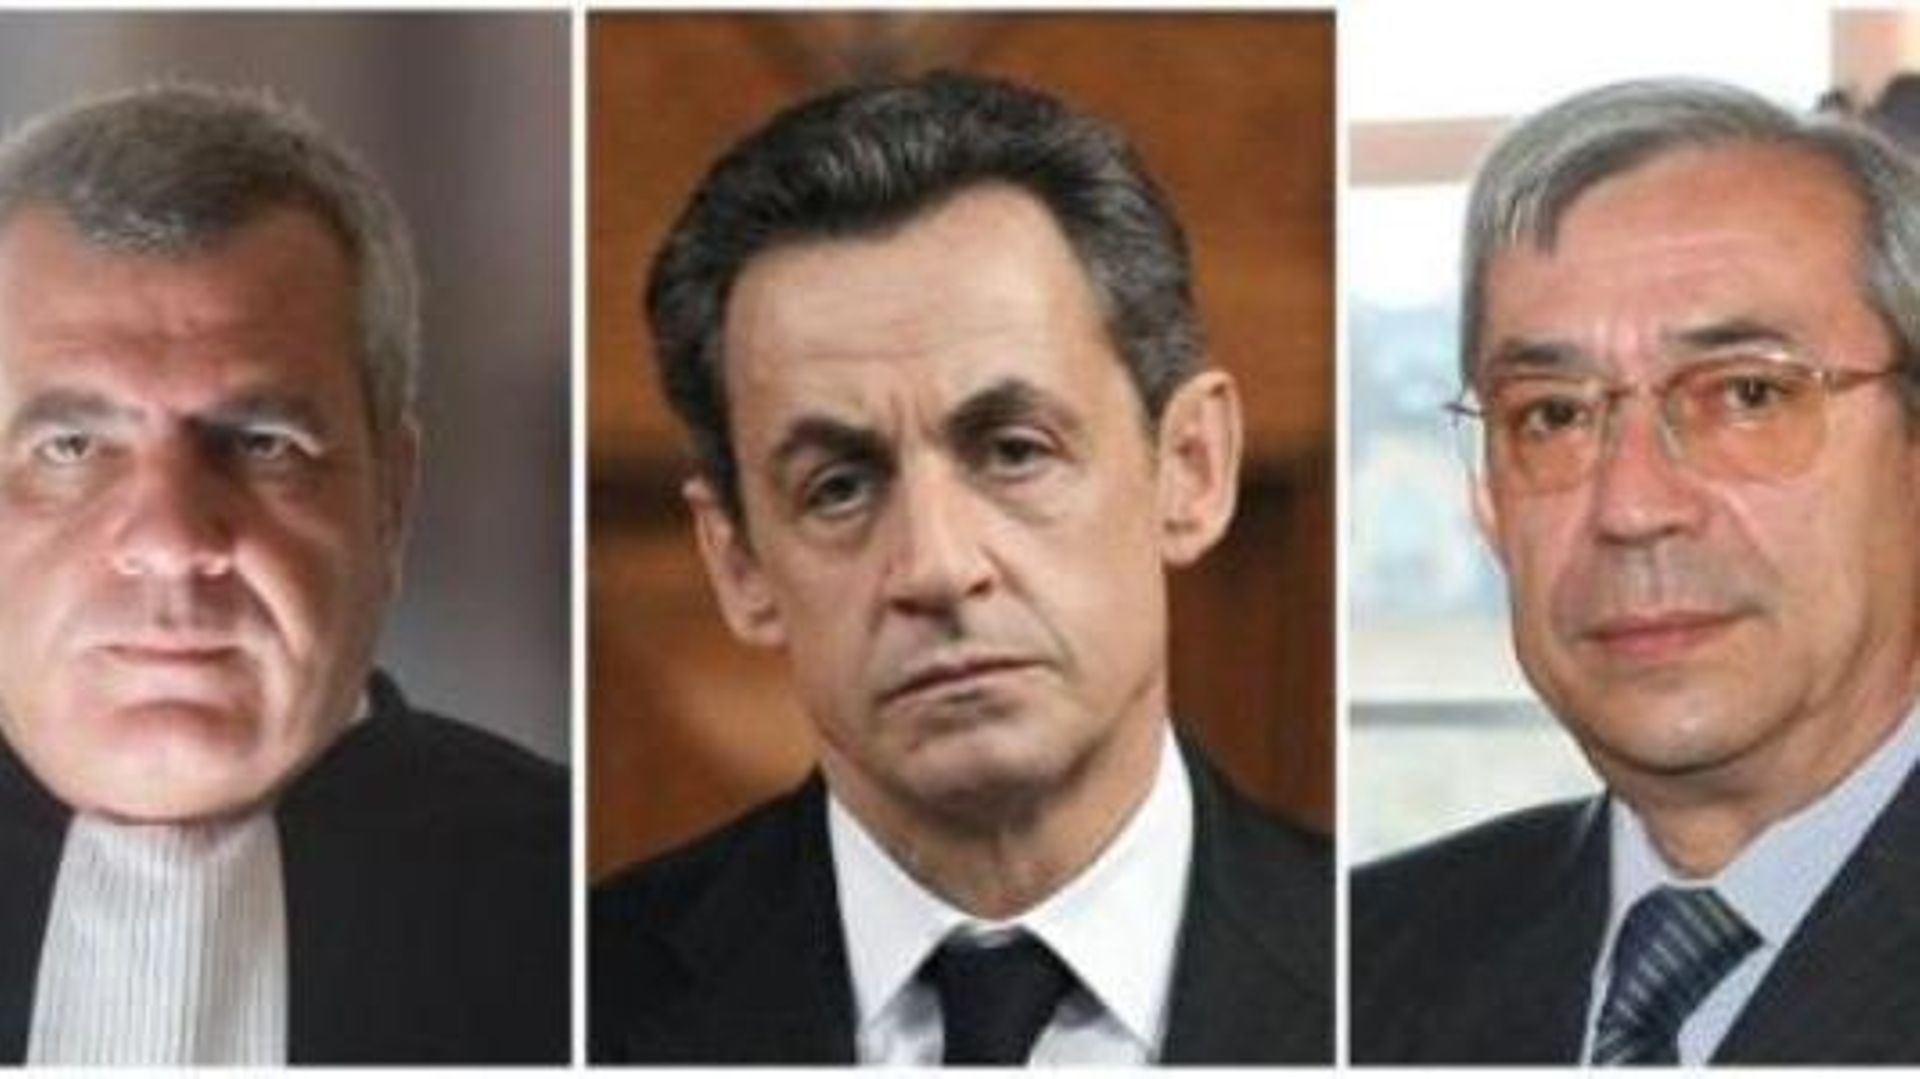 Trafic d'influence en France - L'ex-président Nicolas Sarkozy mis en examen notamment pour corruption active